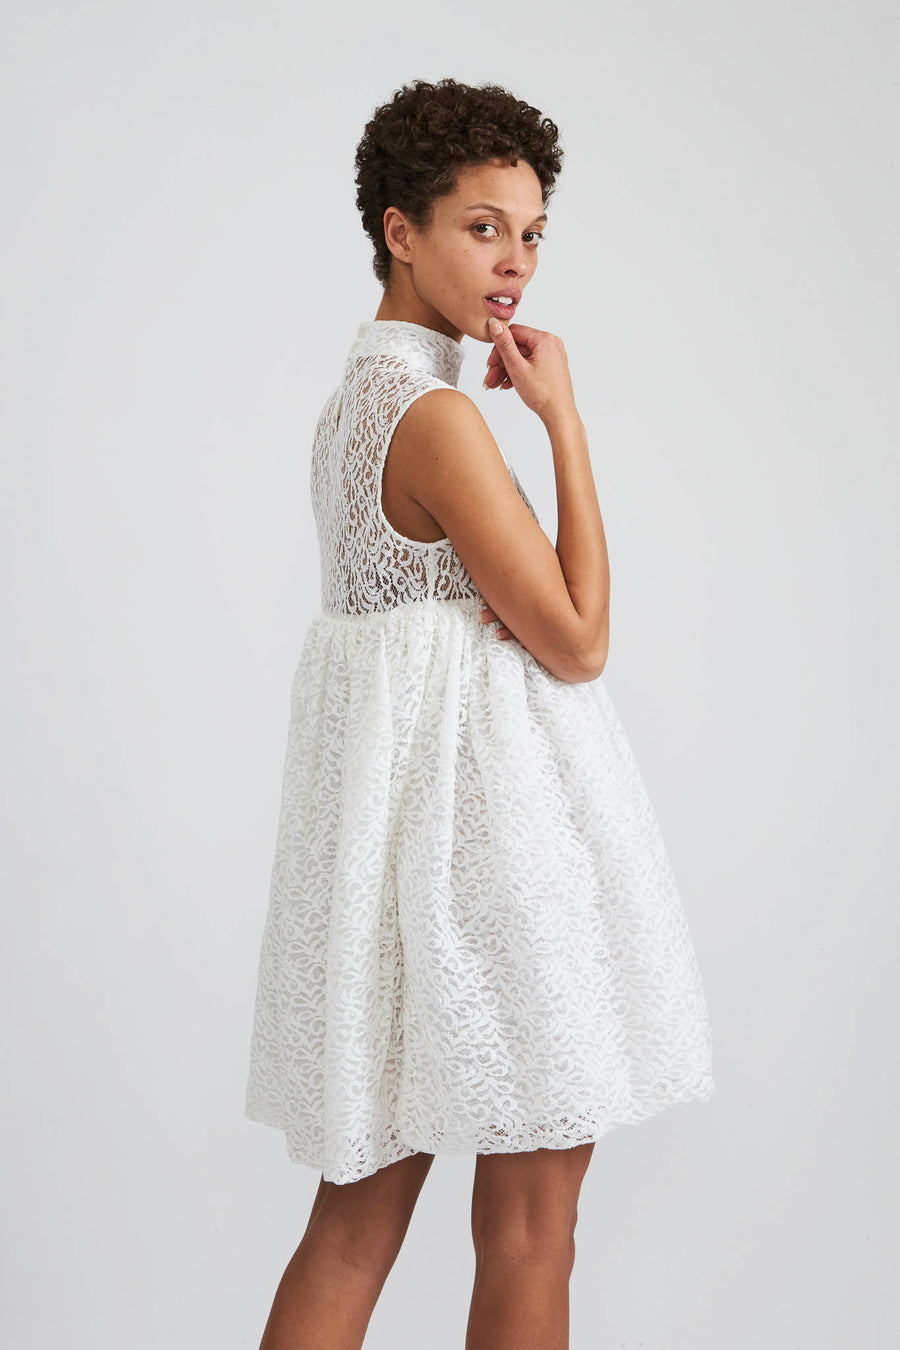 BATSHEVA - Percy Dress in White Lace